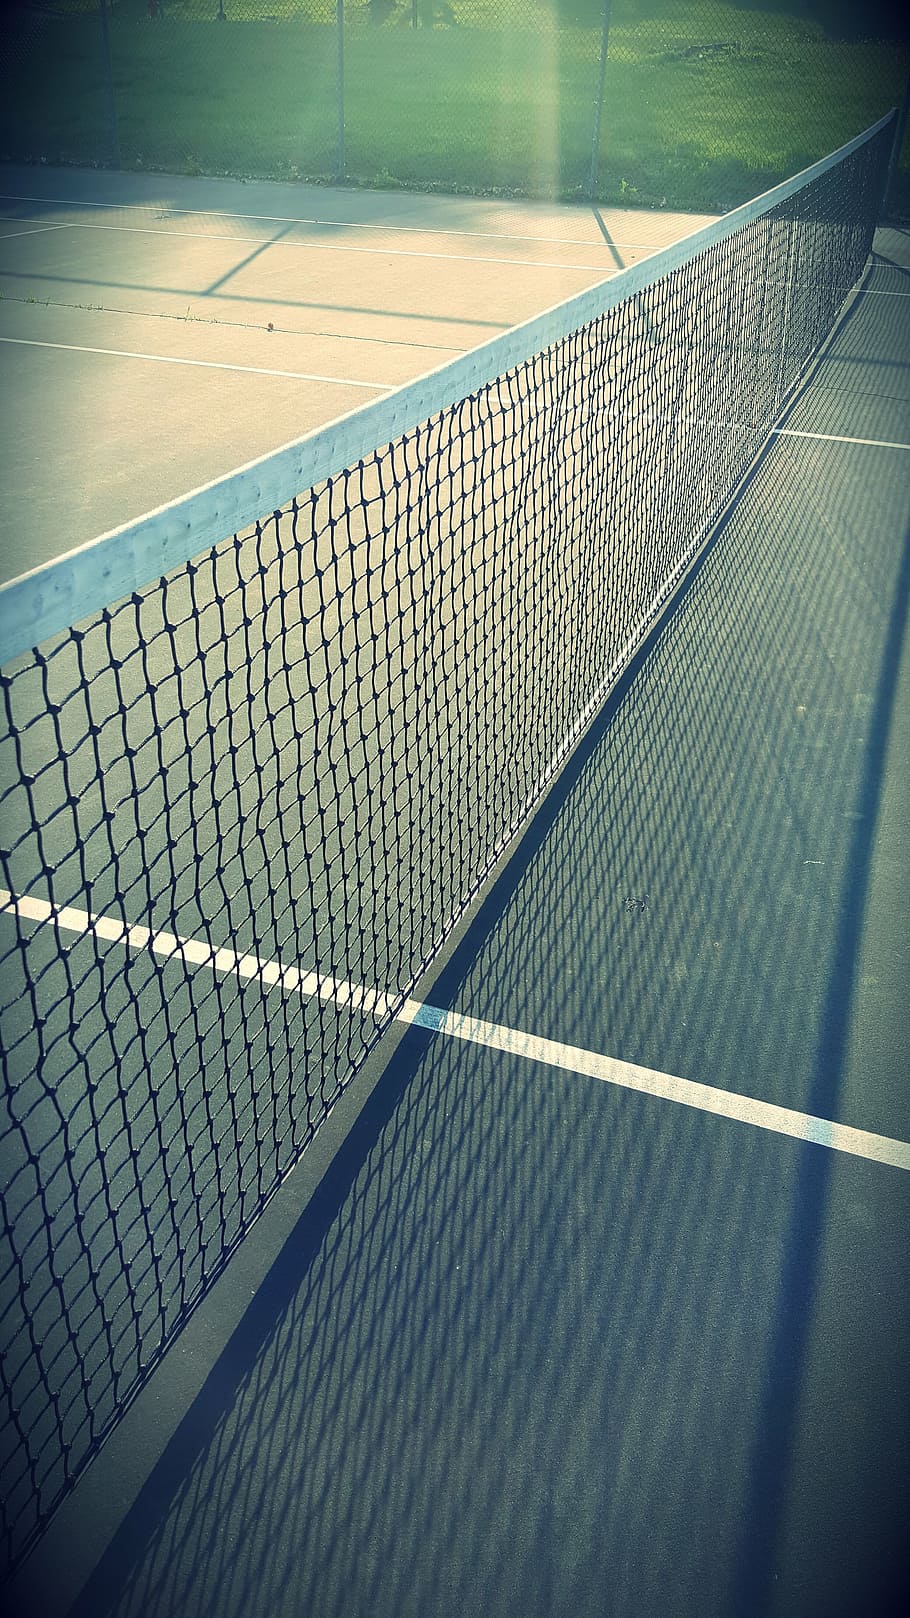 seletivo, fotografia de foco, branco, tênis, rede, quadra, esporte, quadra de tênis, rede de tênis, rede - equipamento esportivo